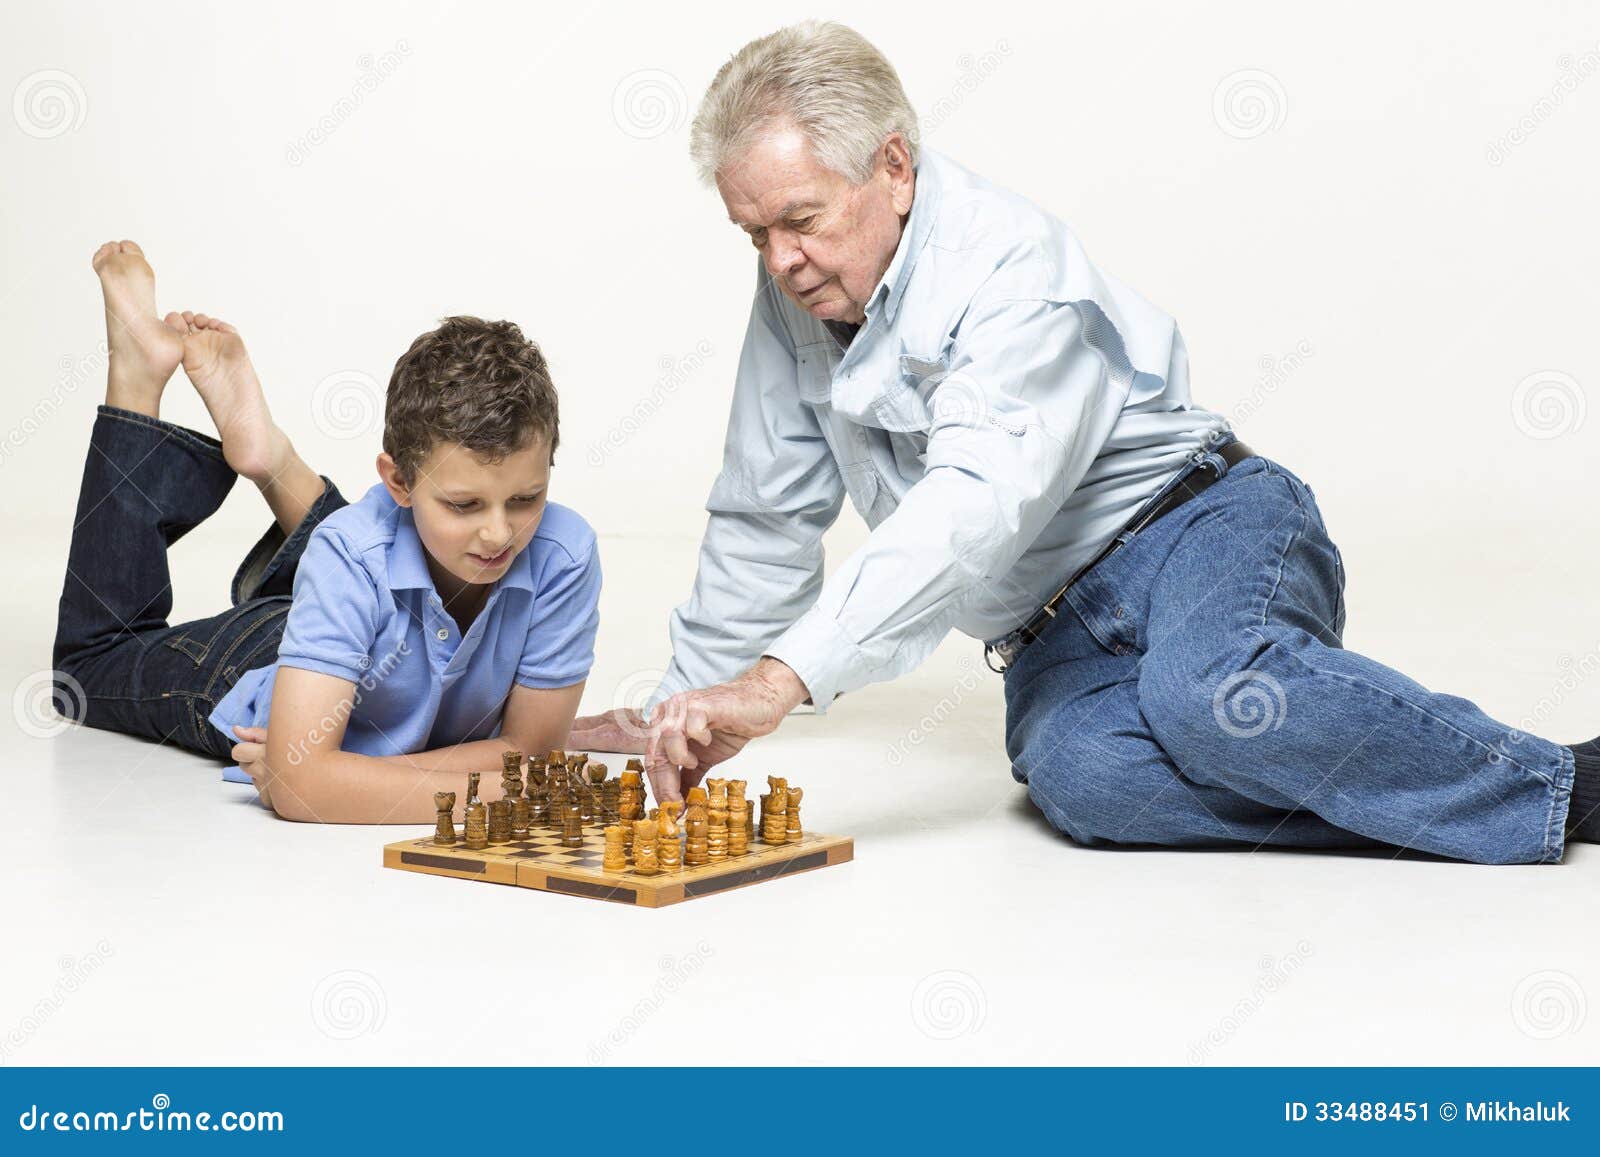 Дед с внуком играют в шашки. Внук с дедушкой и шахматы. Дедушка и внук играют в шахматы. Папа играет в шахматы с дедушкой. Ребенок играет в шахматы с дедом.